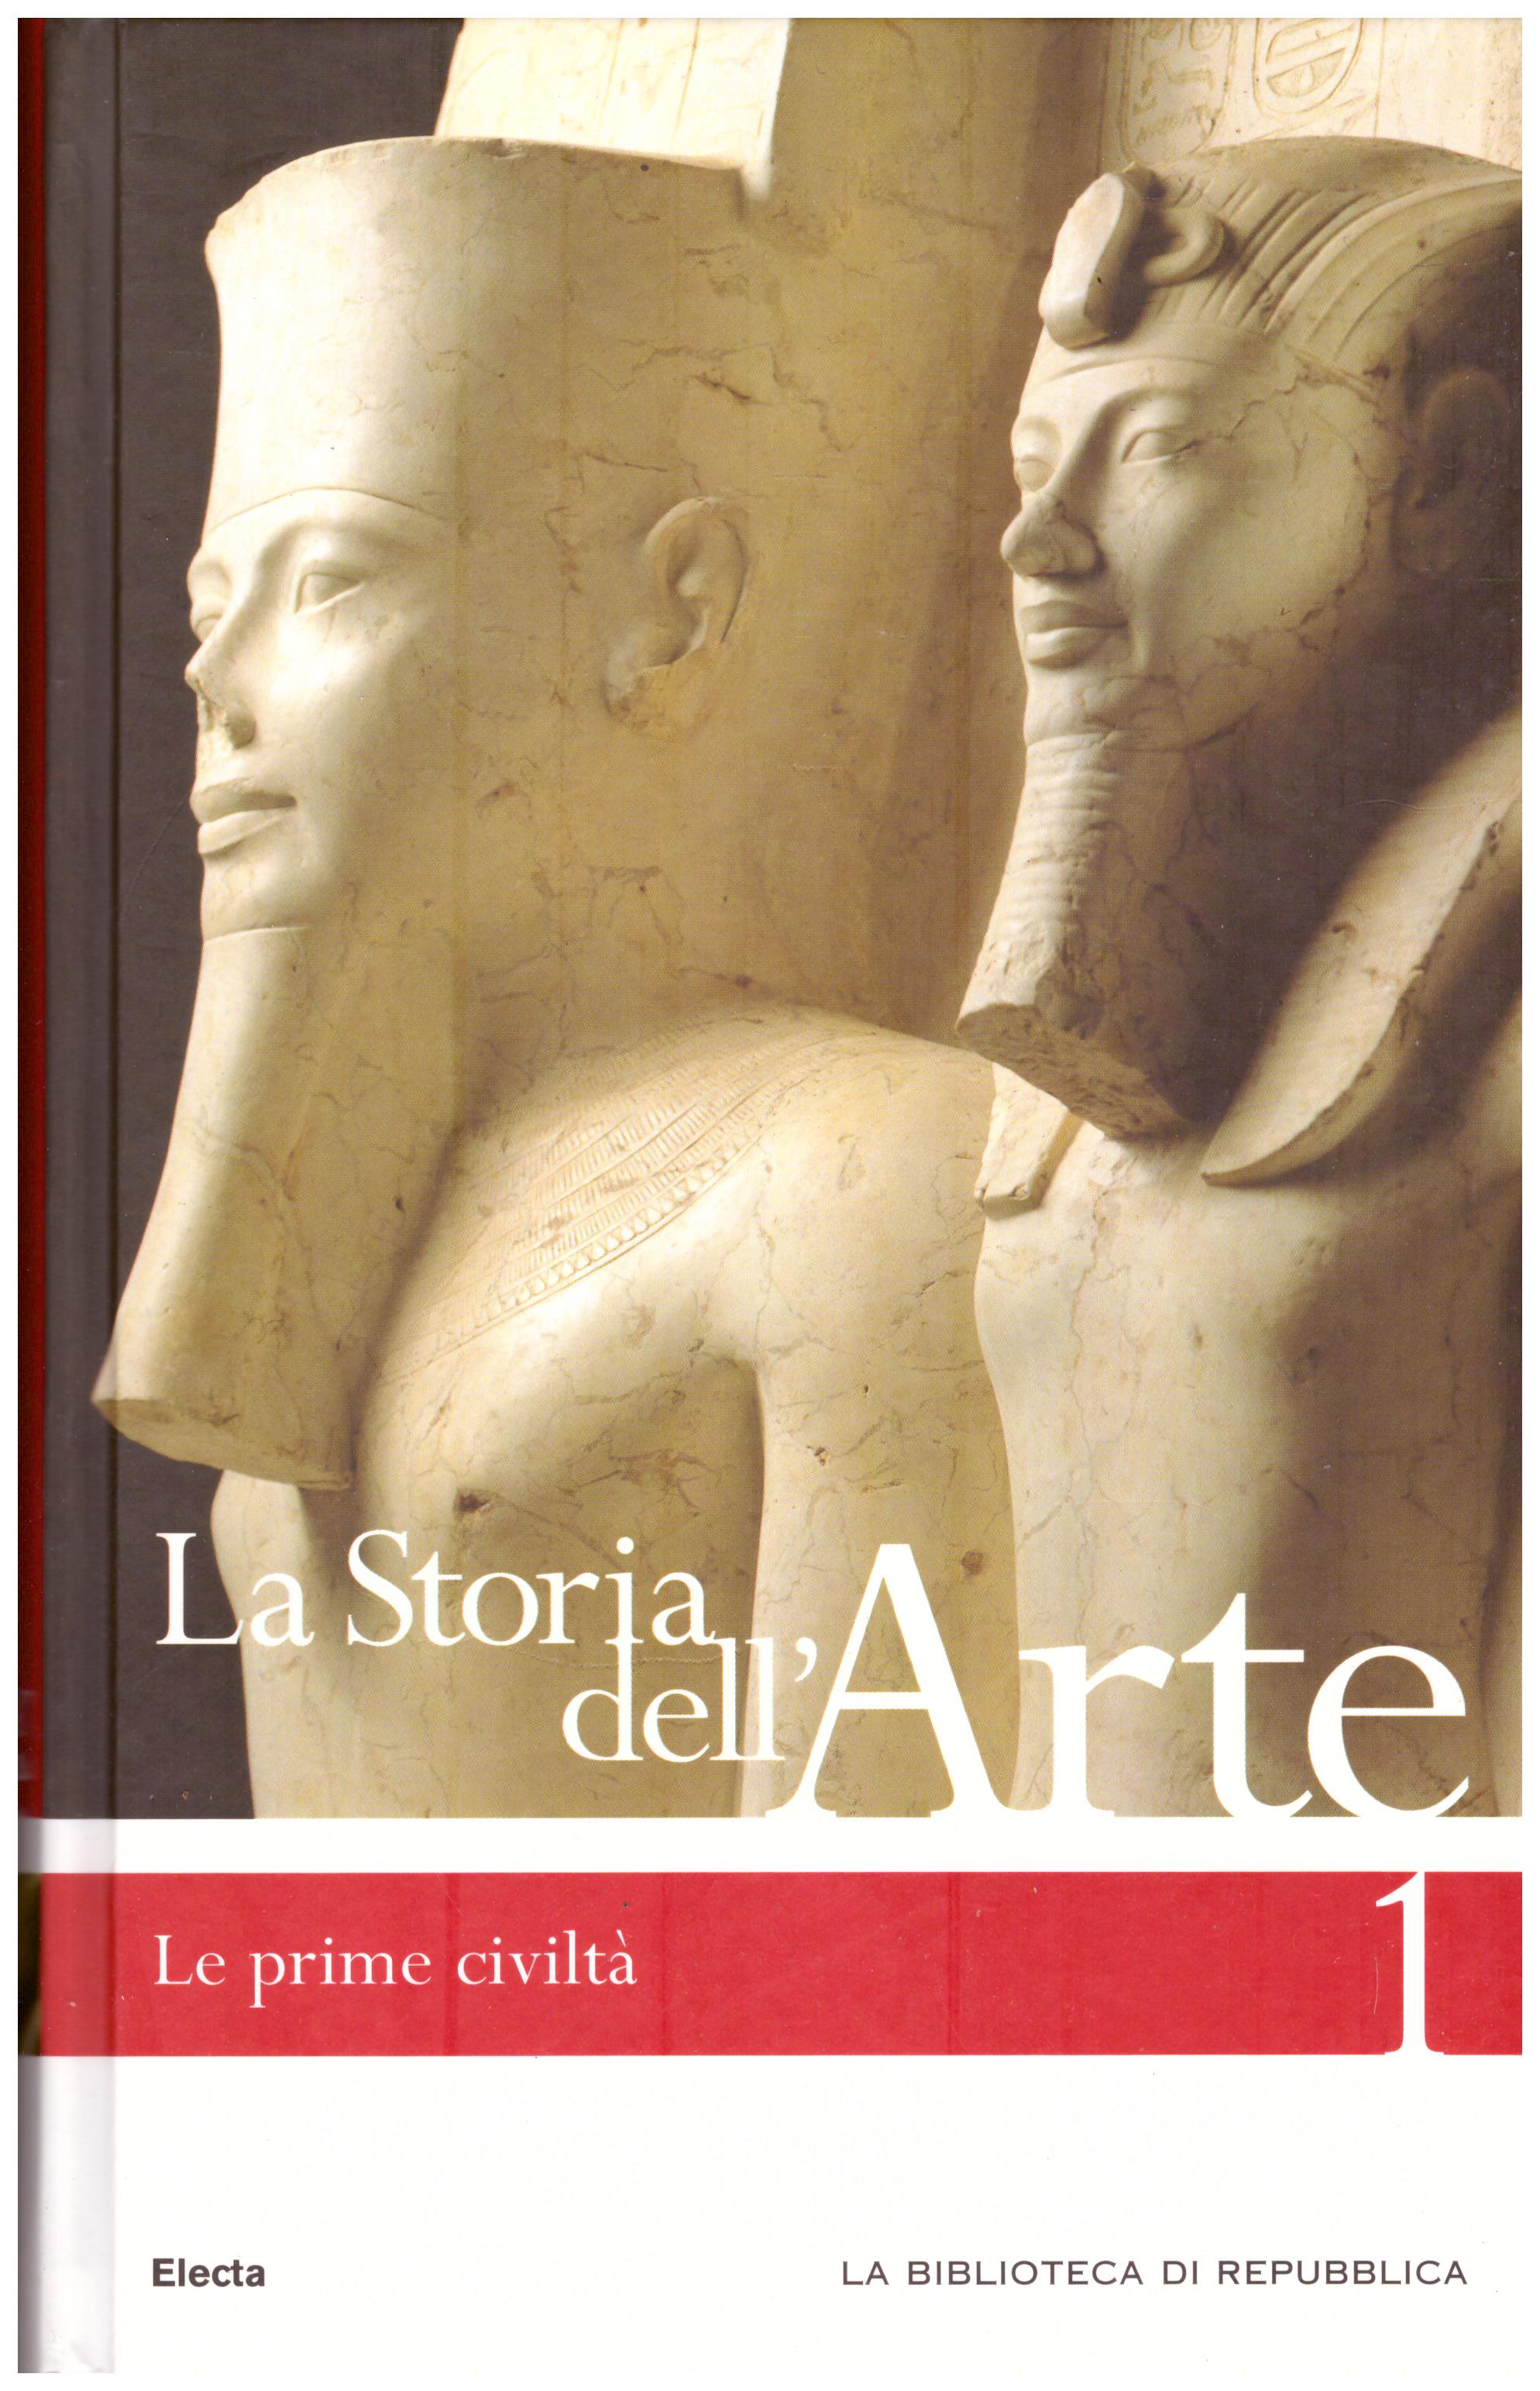 Titolo: La storia dell'arte n.1 Le prime civiltà  Autore : AA.VV.  Editore: Mondadori Electa biblioteca di Repubblica 2006